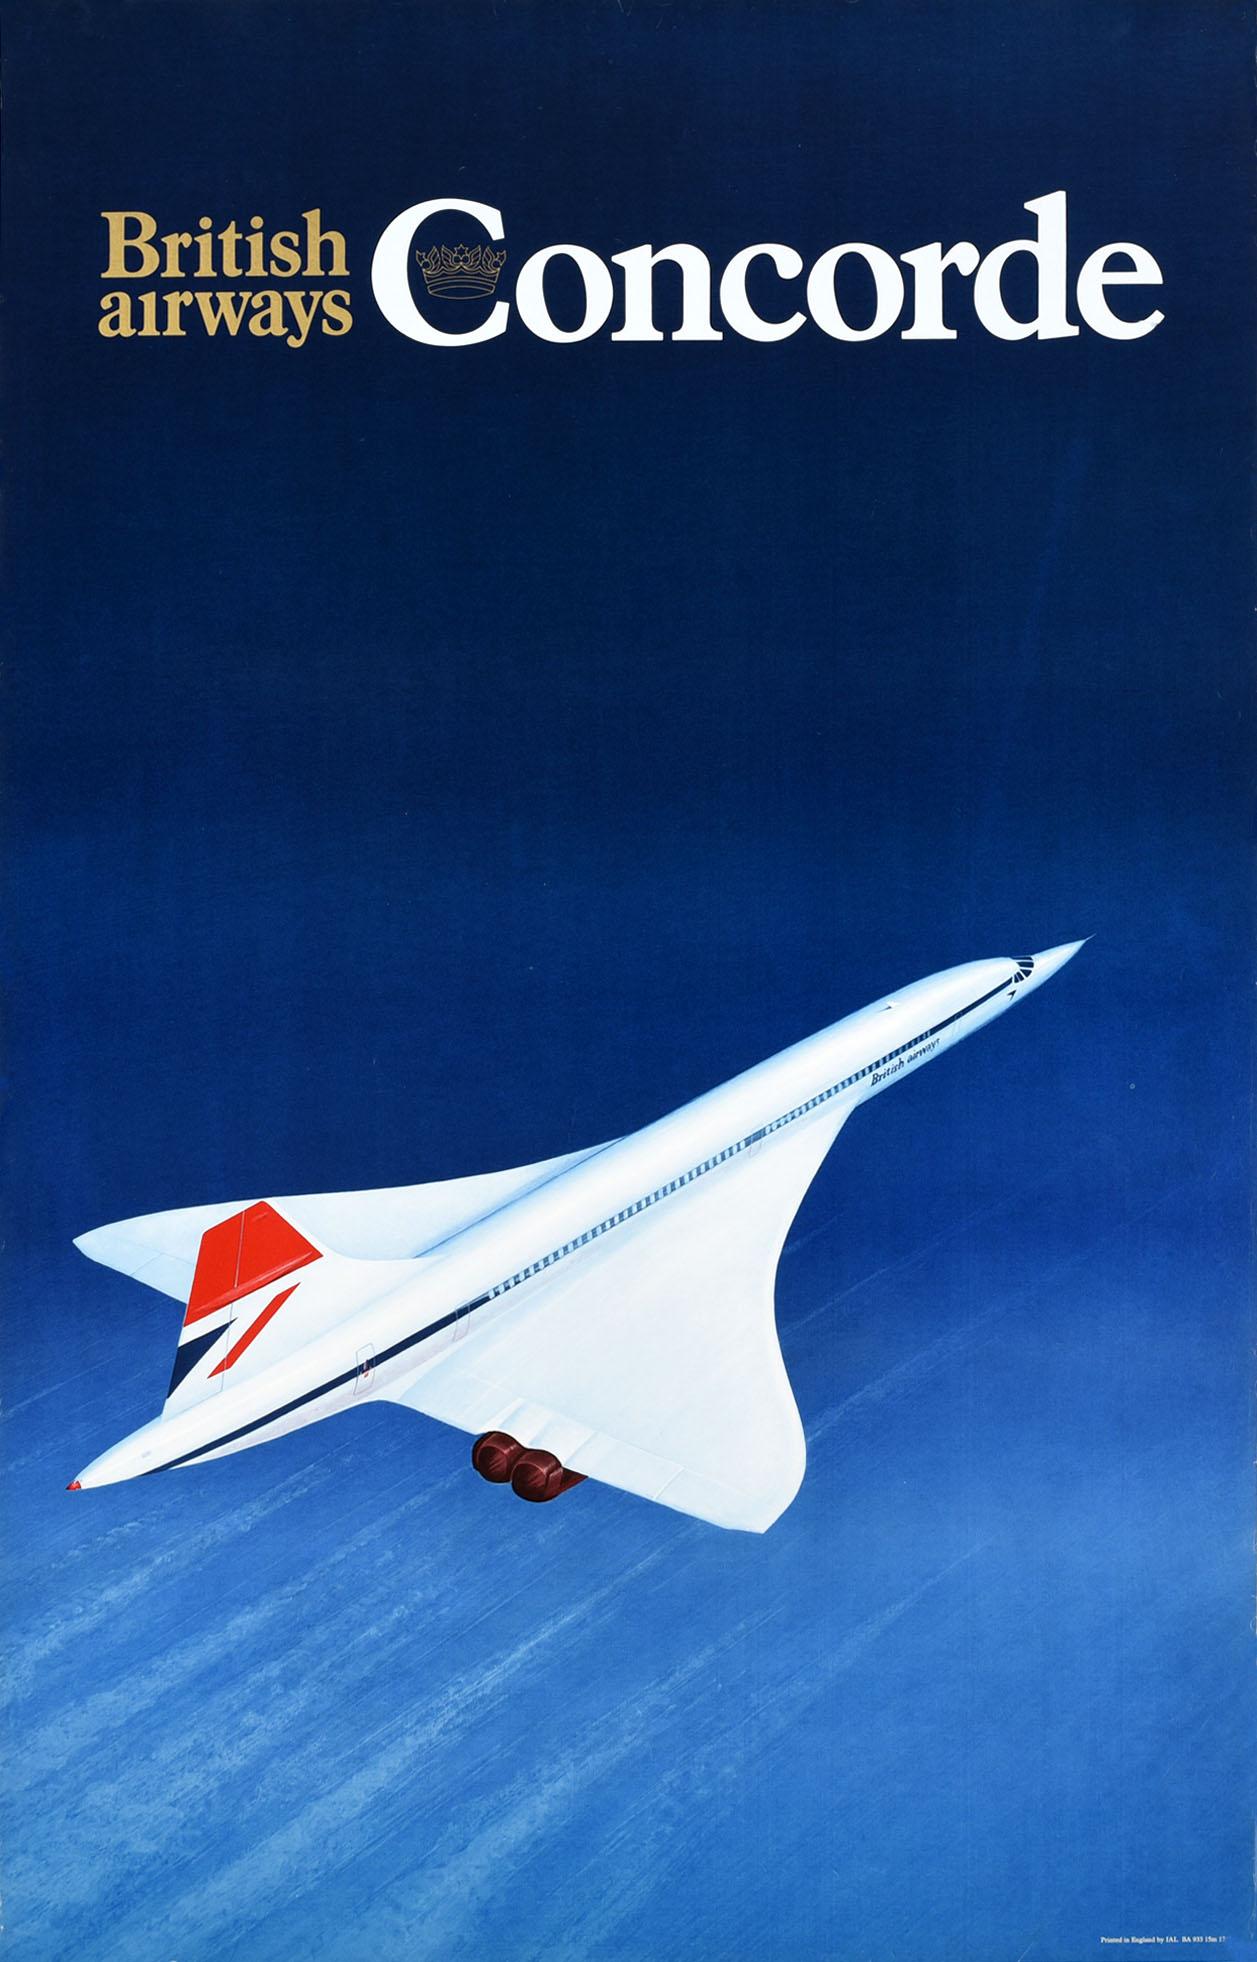 Unknown Print - Original Vintage Poster British Airways Concorde Plane Supersonic Air Travel Art